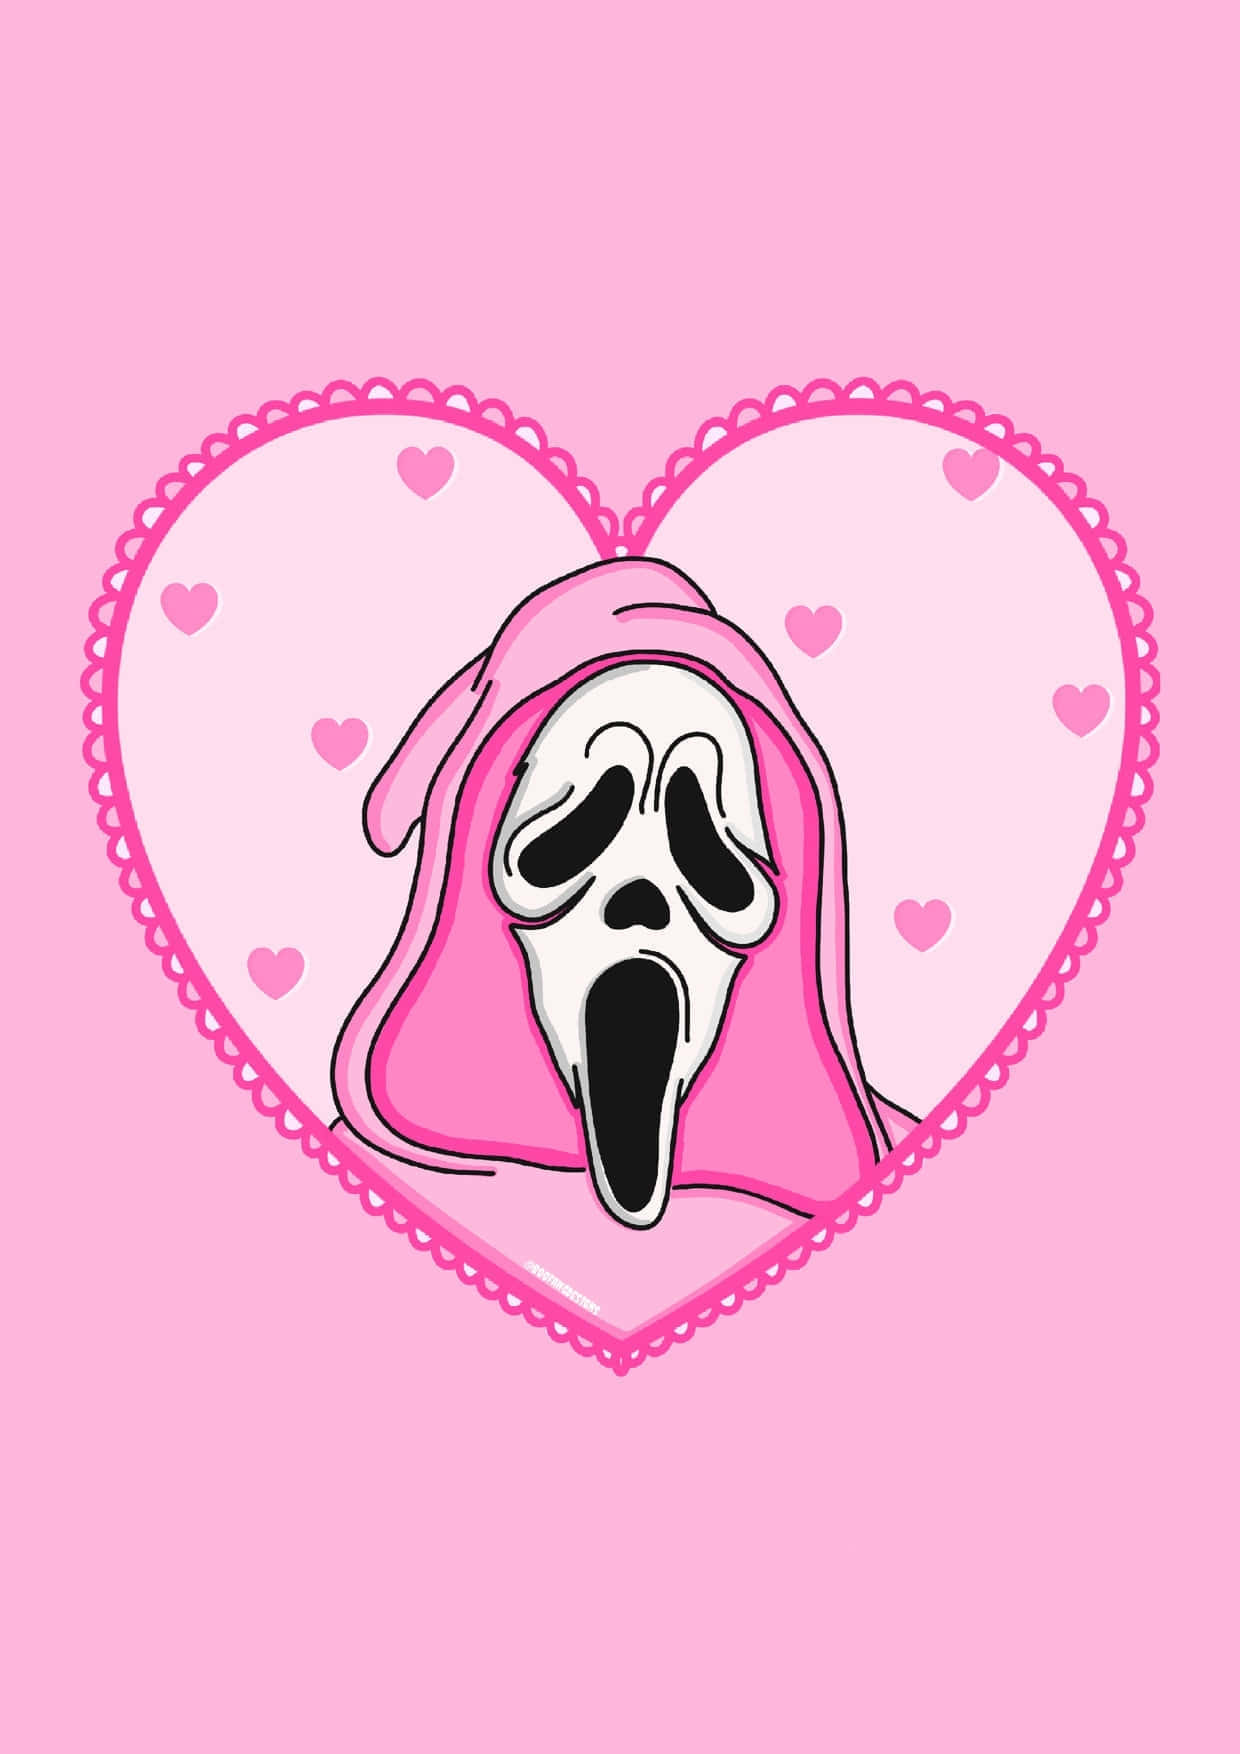 Pink Heart Scream Mask Wallpaper